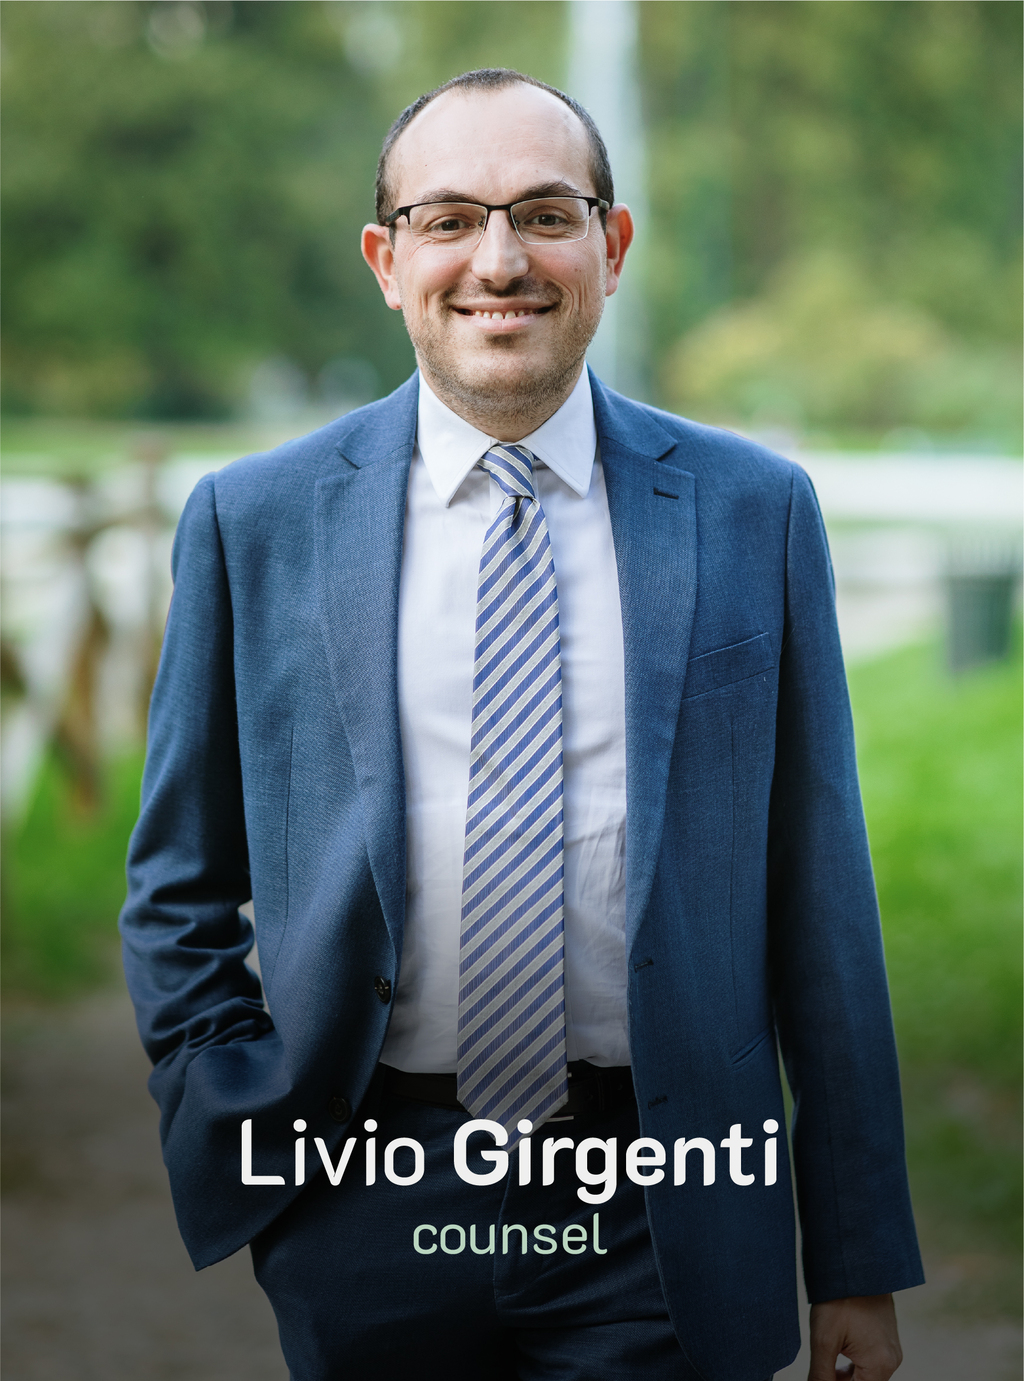 Livio Girgenti